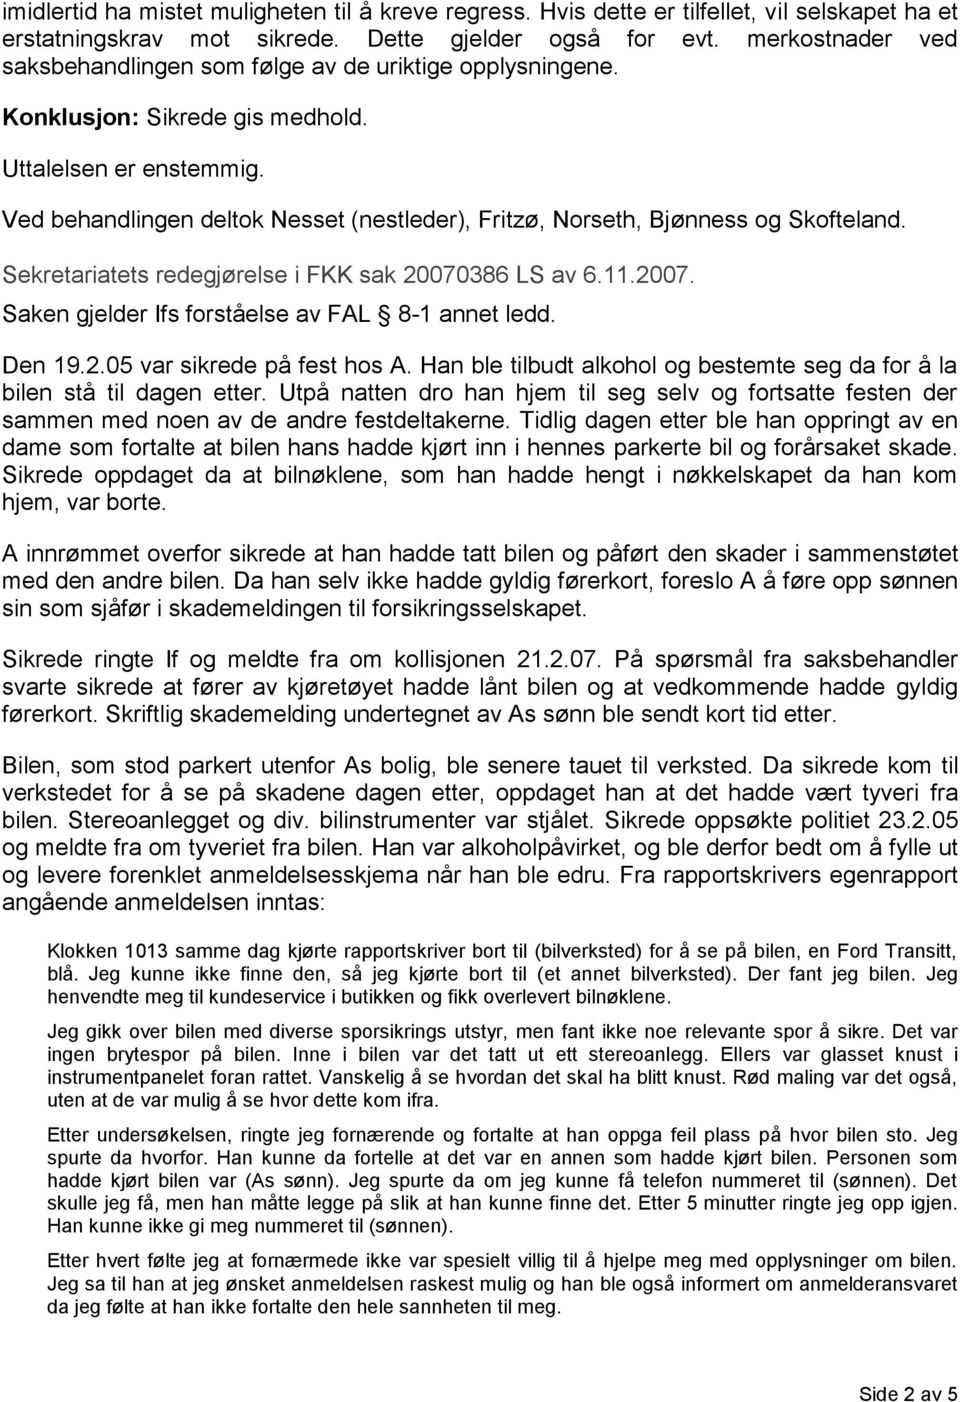 Ved behandlingen deltok Nesset (nestleder), Fritzø, Norseth, Bjønness og Skofteland. Sekretariatets redegjørelse i FKK sak 20070386 LS av 6.11.2007. Saken gjelder Ifs forståelse av FAL 8-1 annet ledd.